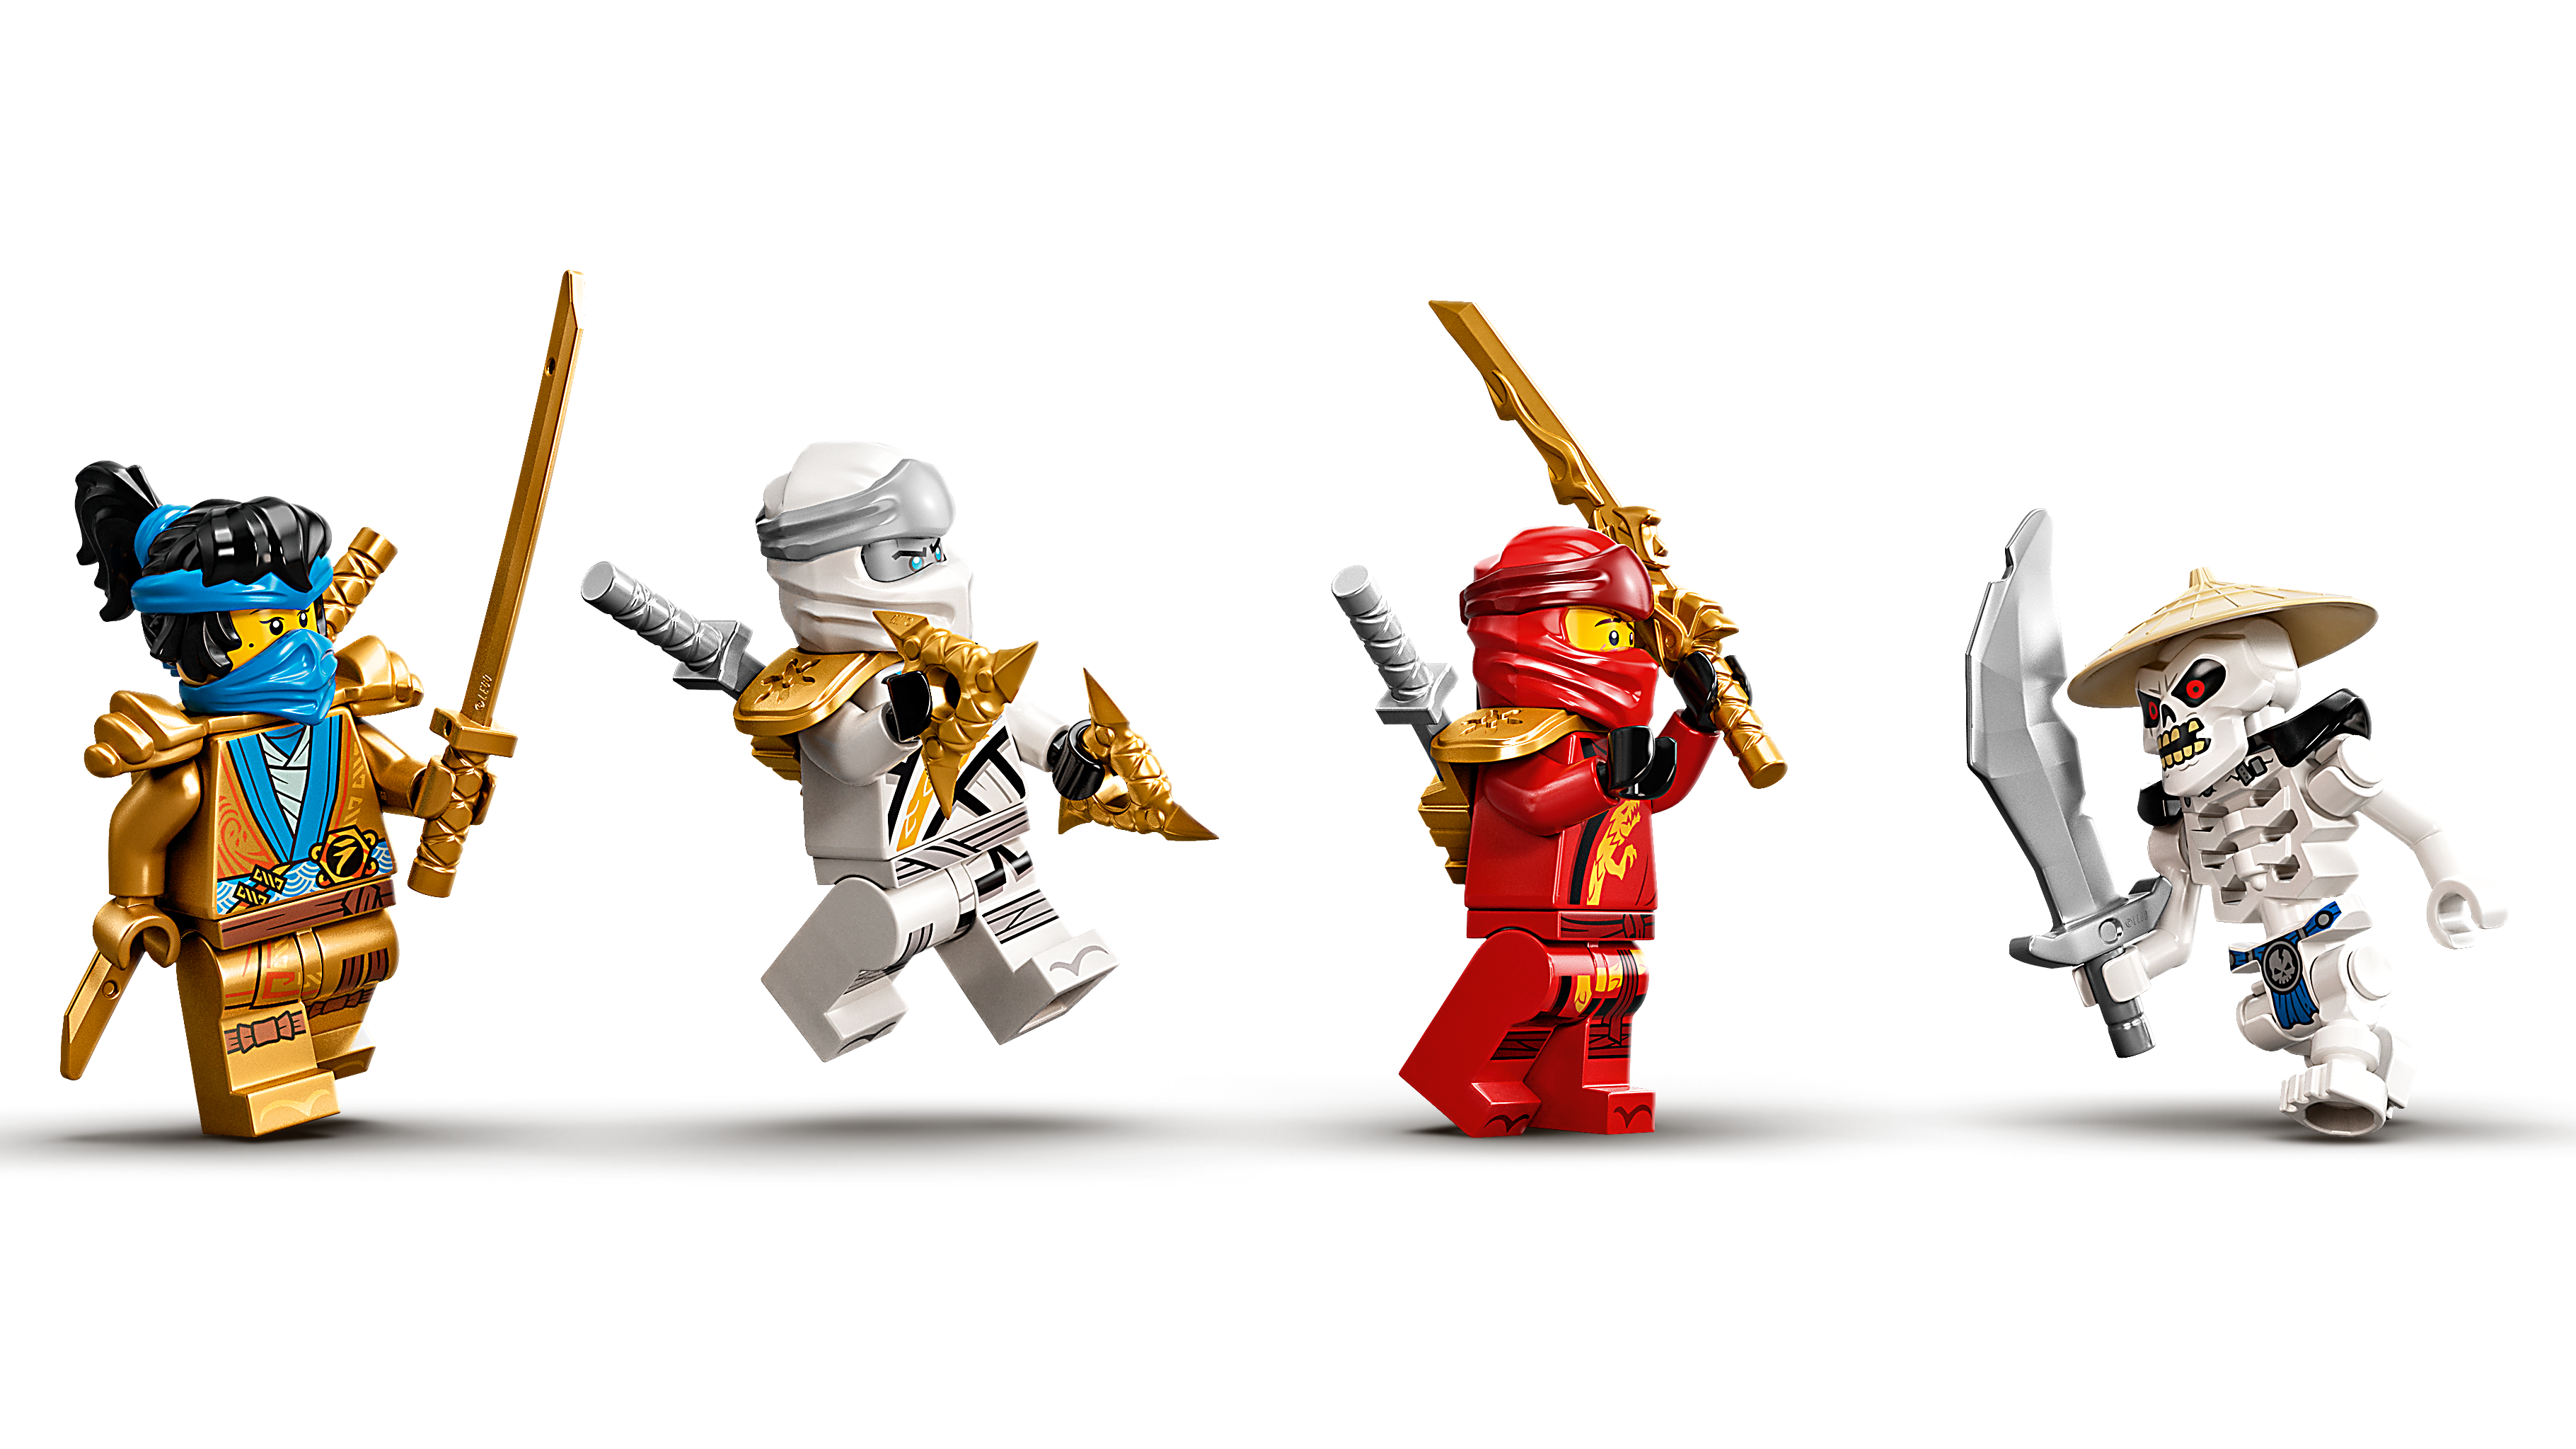 LEGO Set 5007553-1 Ninjago: Build And Stick: NINJAGO Dragons (2022